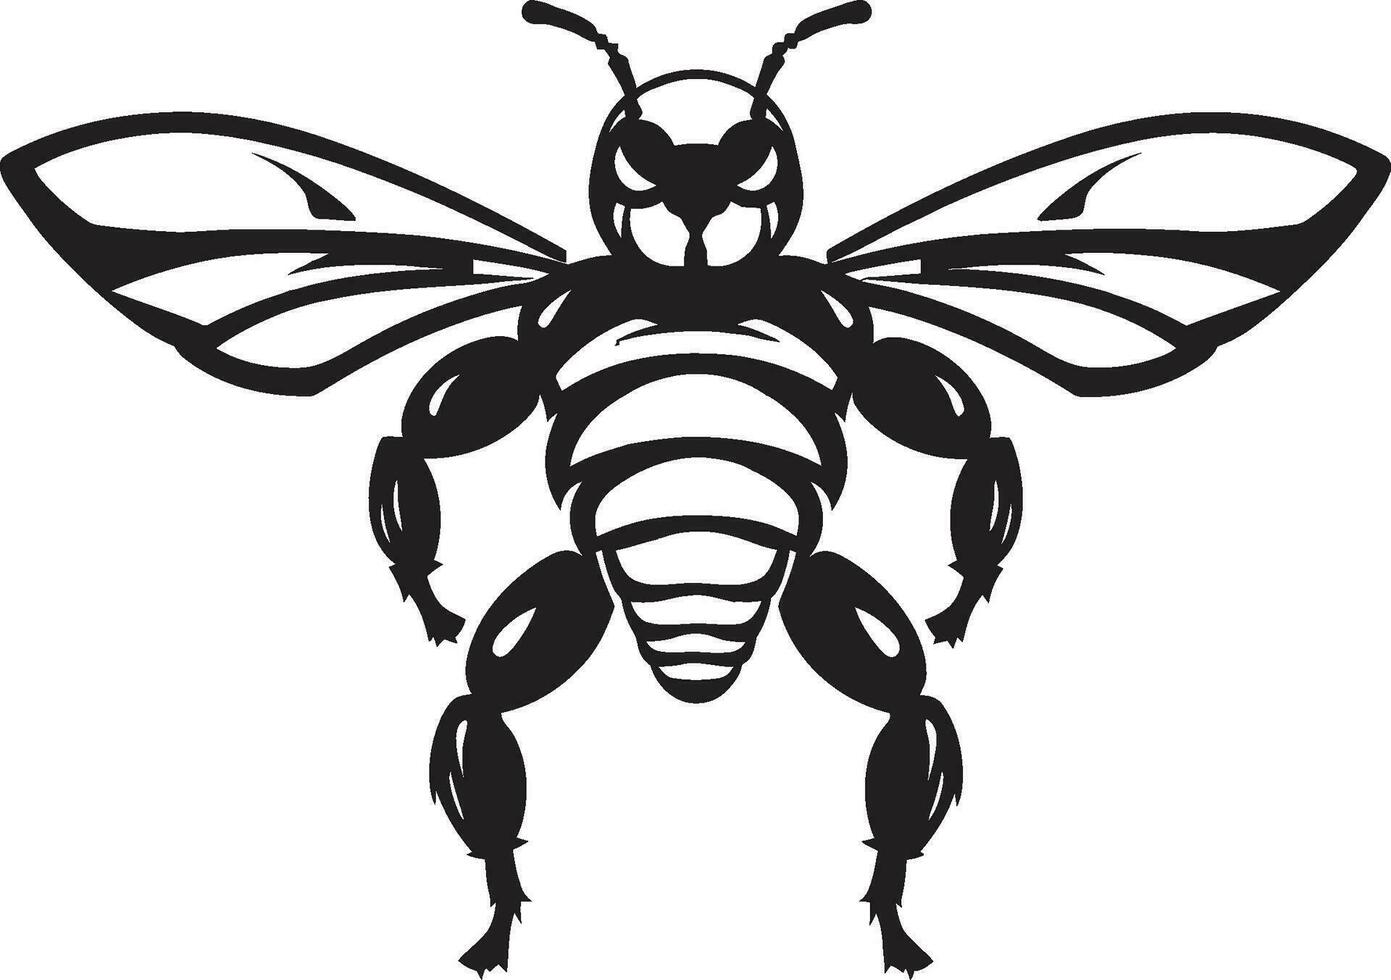 Warriors Sting Black Hornet Emblem Emblematic Insect Excellence Mascot Symbol vector